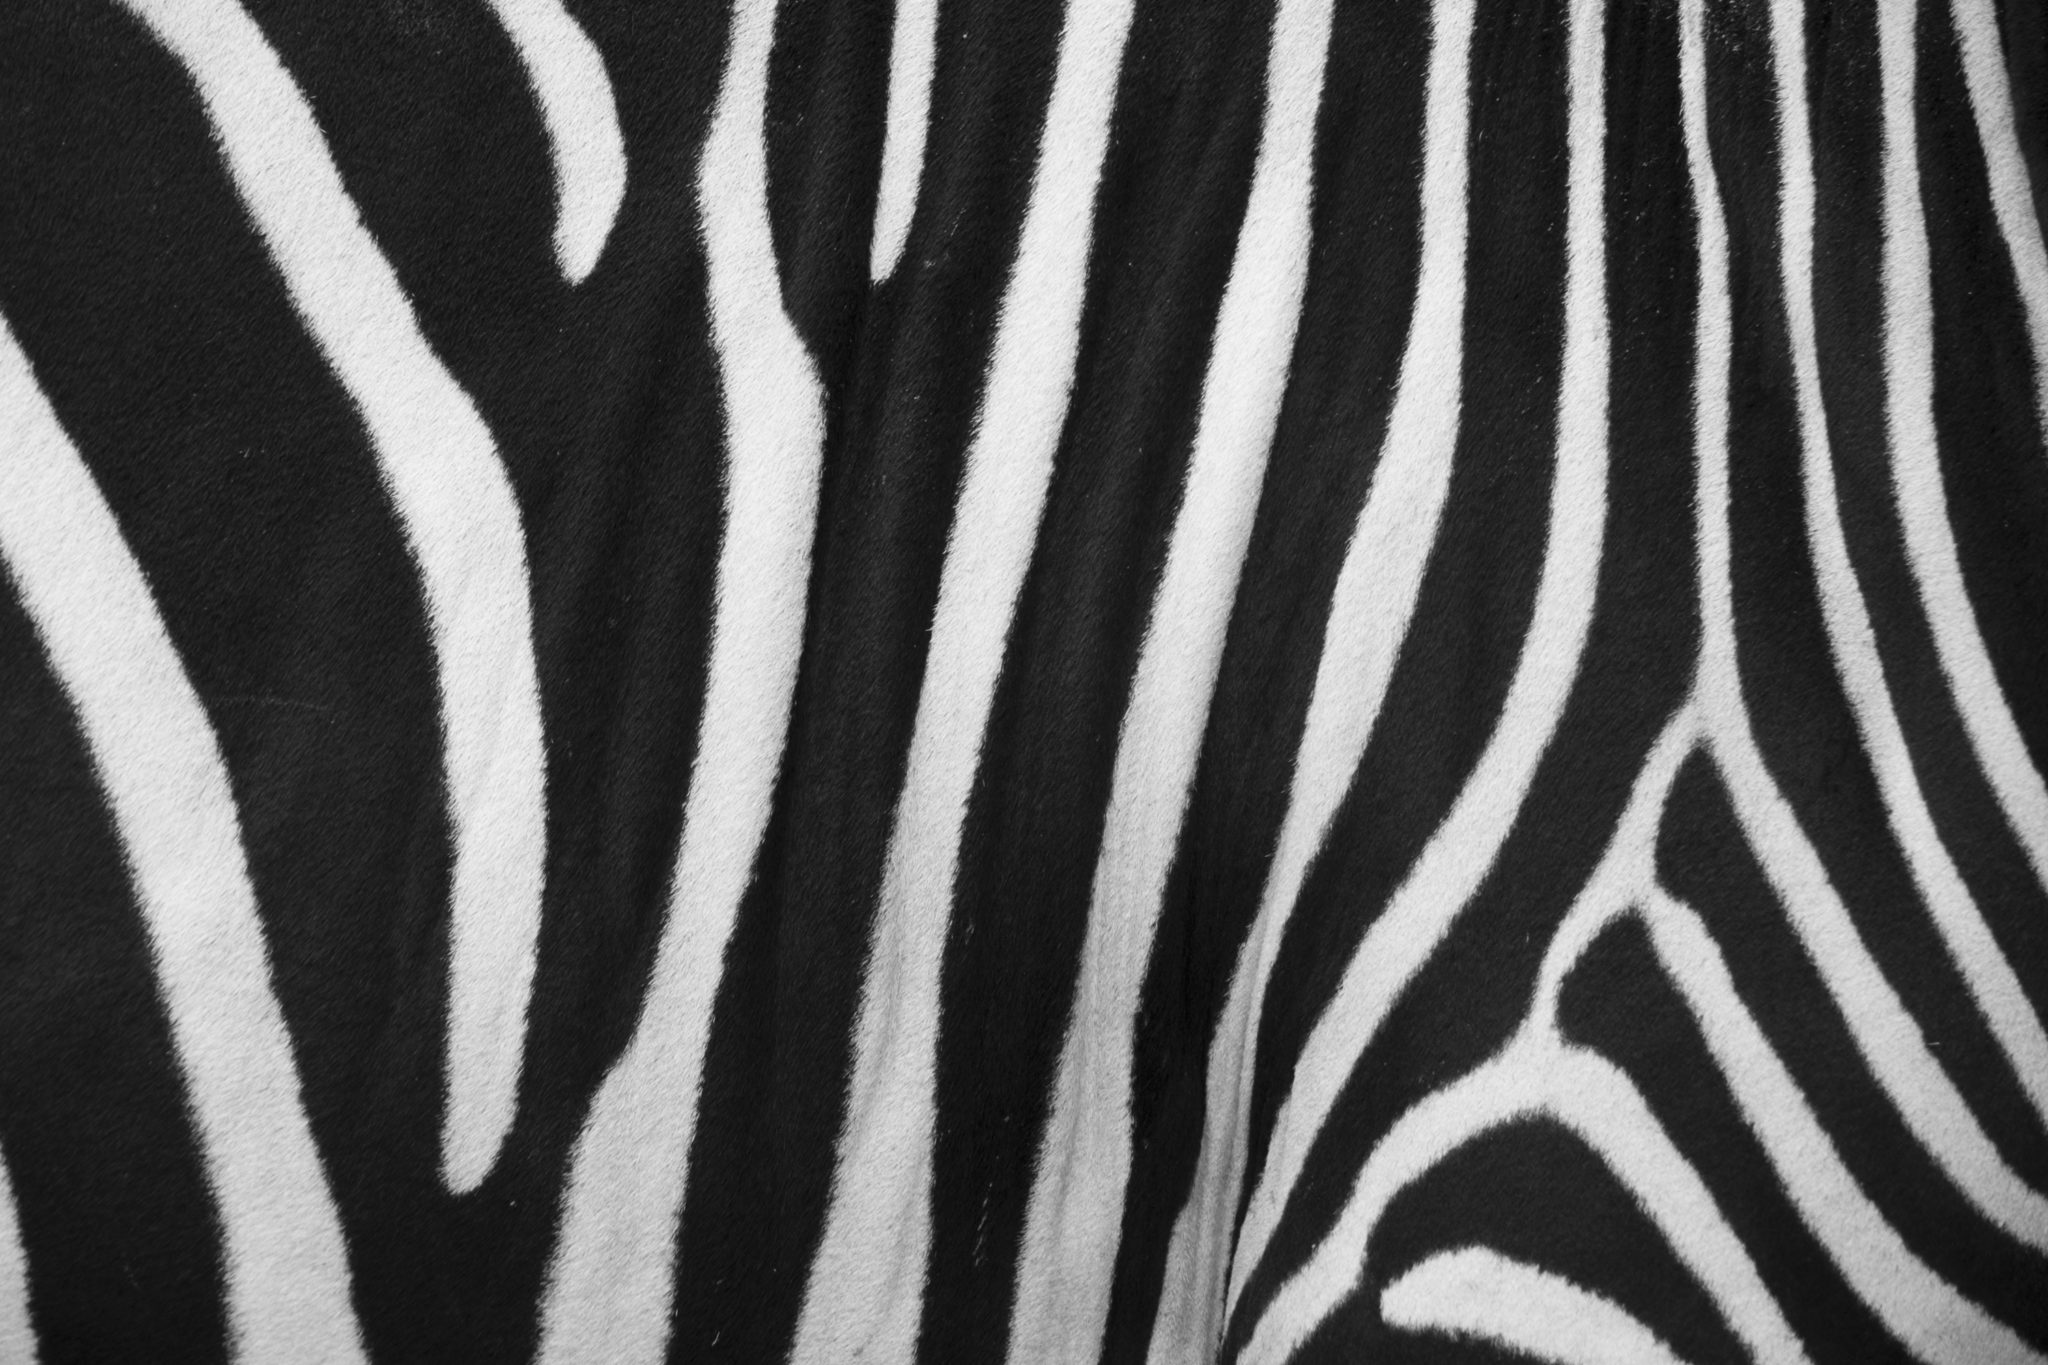 Le strisce della zebra